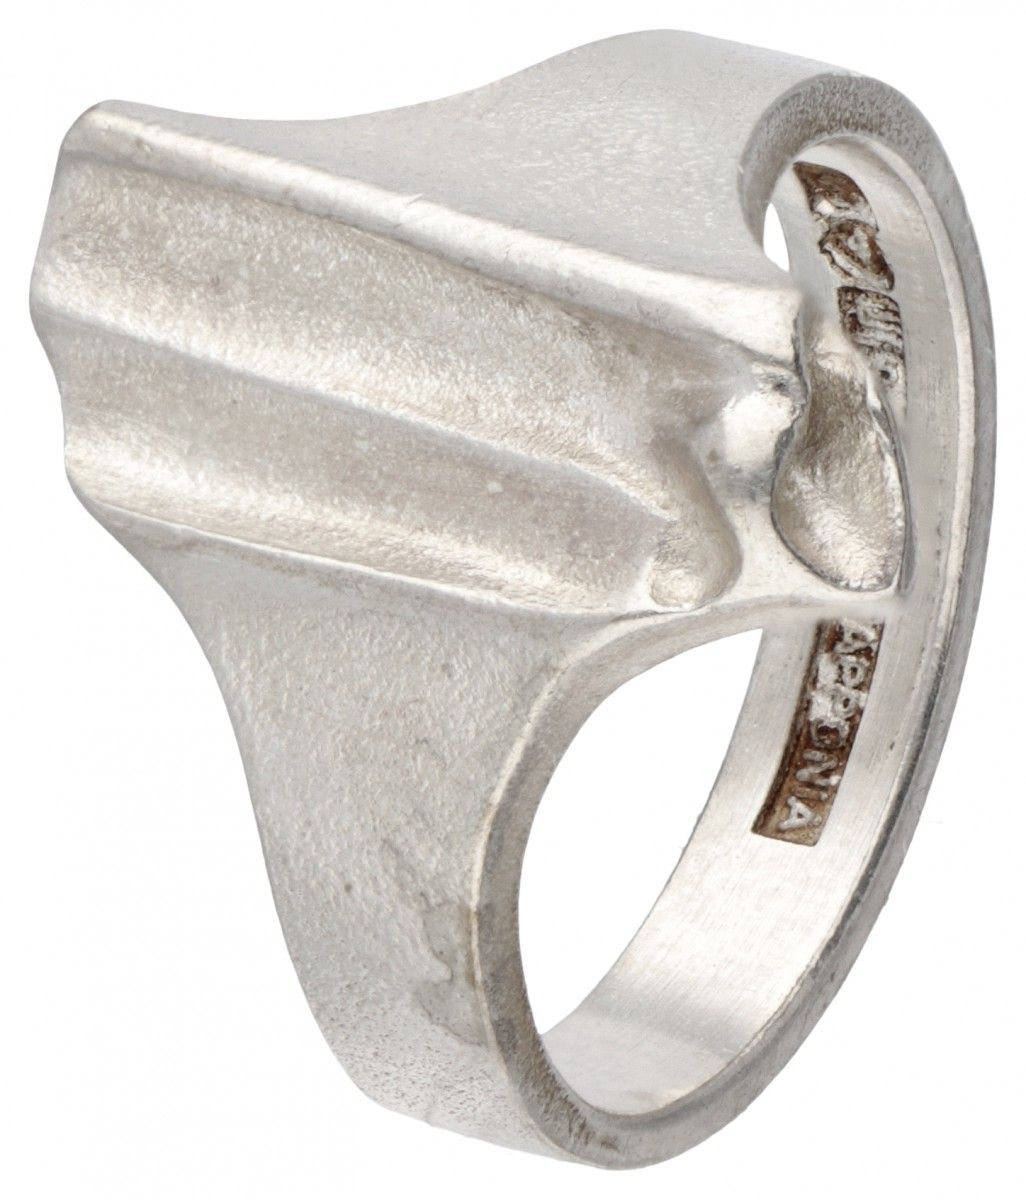 Björn Weckström for Lapponia silver design ring - 925/1000. Poinçons : 925, marq&hellip;